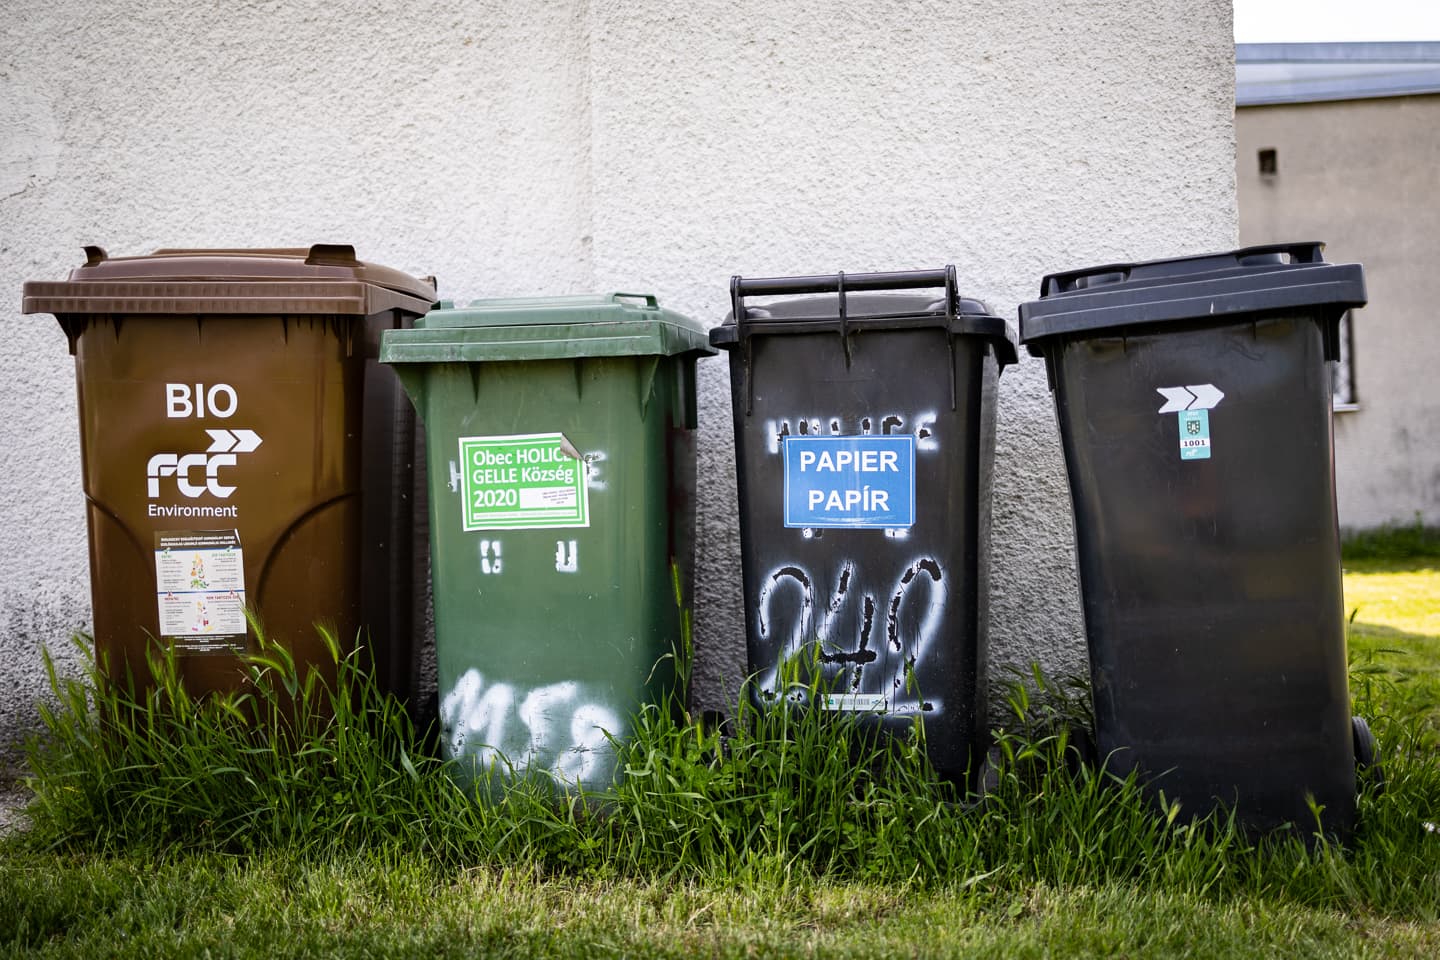 A cukorkapapír, a joghurtos doboz és a műanyag kupak is számít – még lelkiismeretesebben kellene szelektálnunk a hulladékot